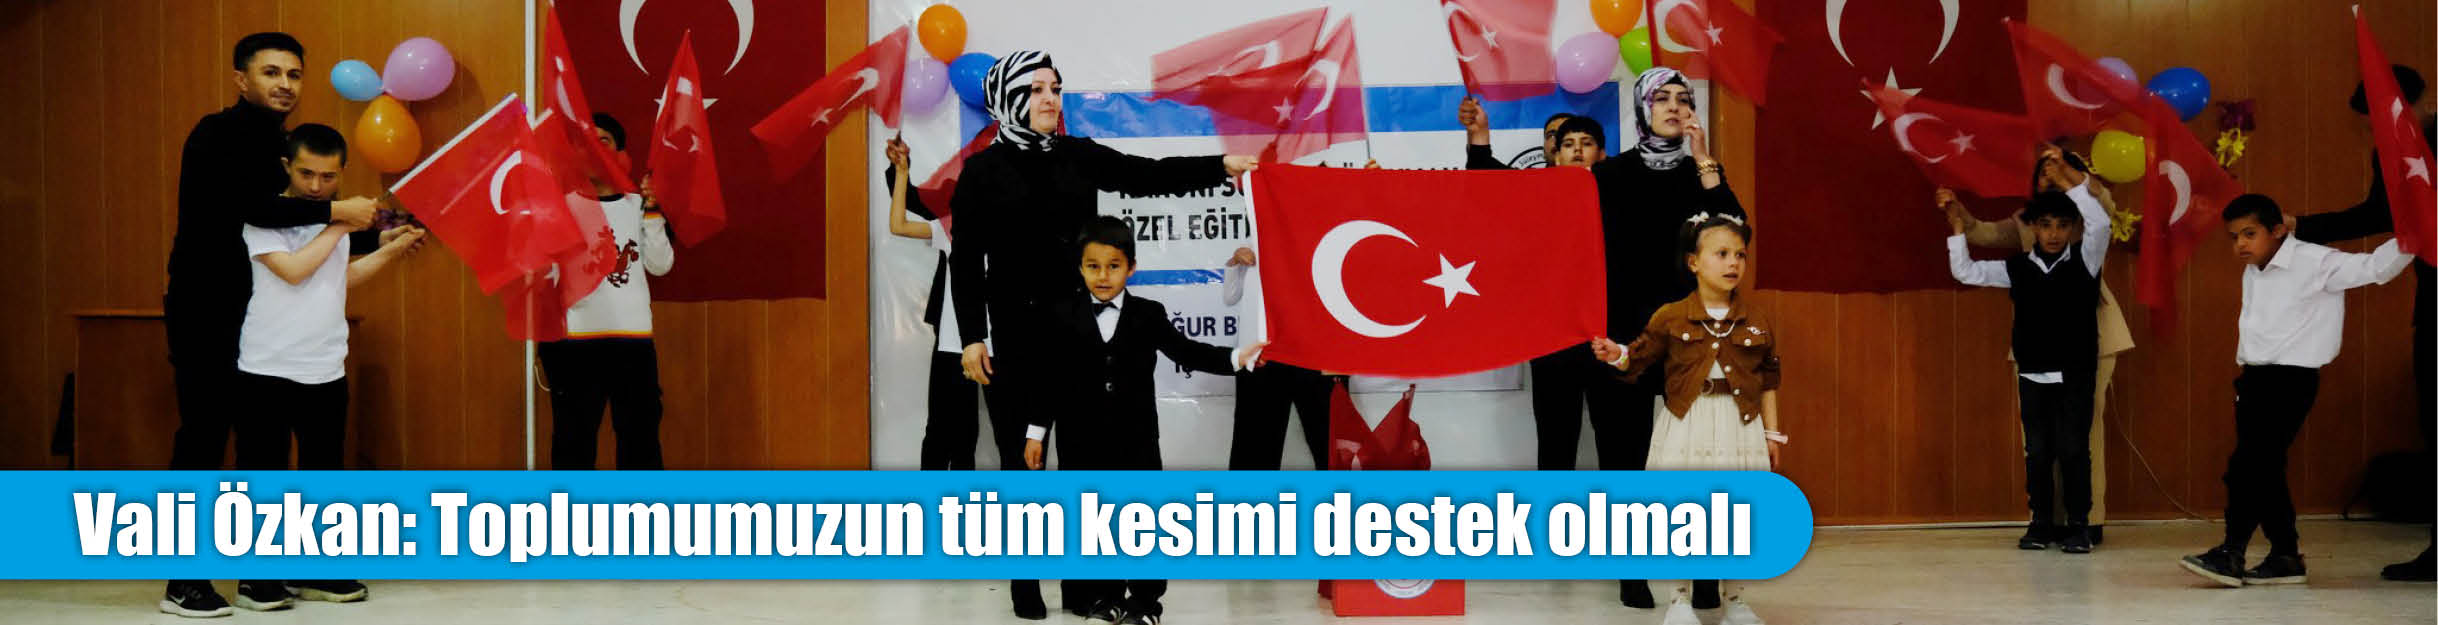 Vali Özkan: Toplumumuzun tüm kesimi destek olmalı